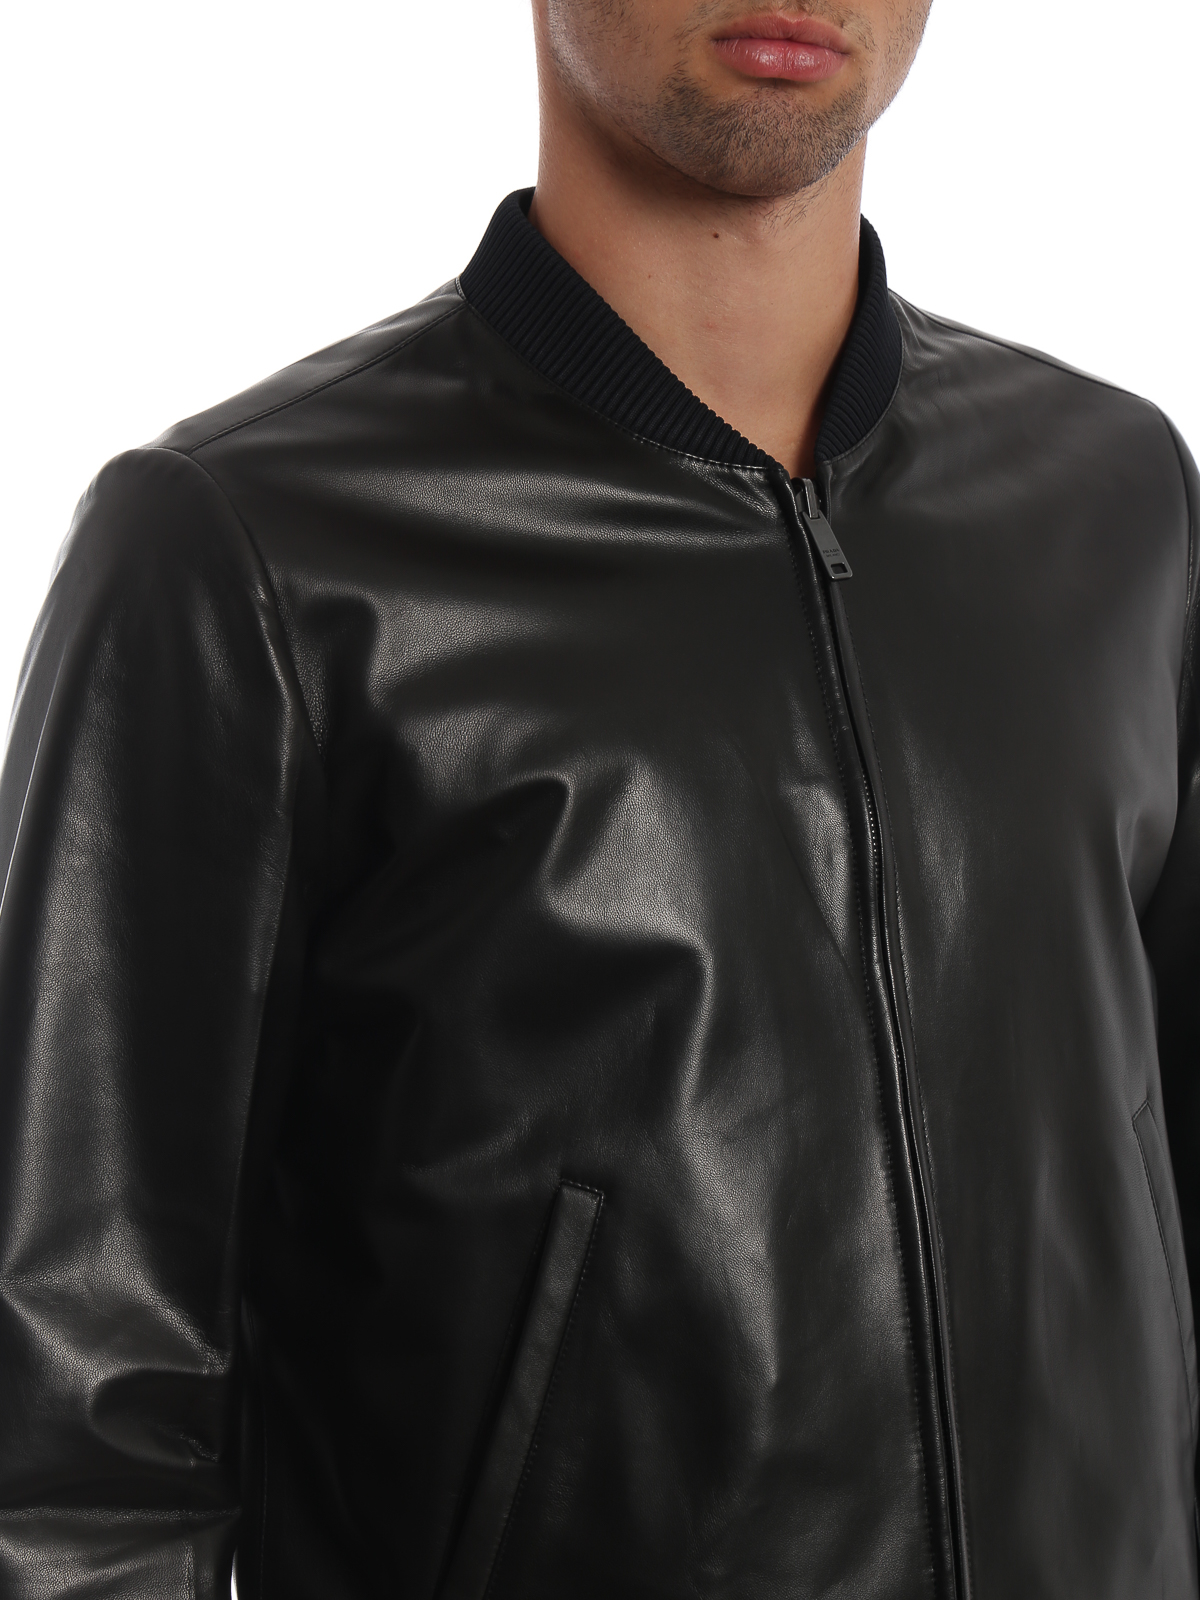 Leather jacket Prada - Nappa and nylon reversible bomber jacket -  UPW141038F0002